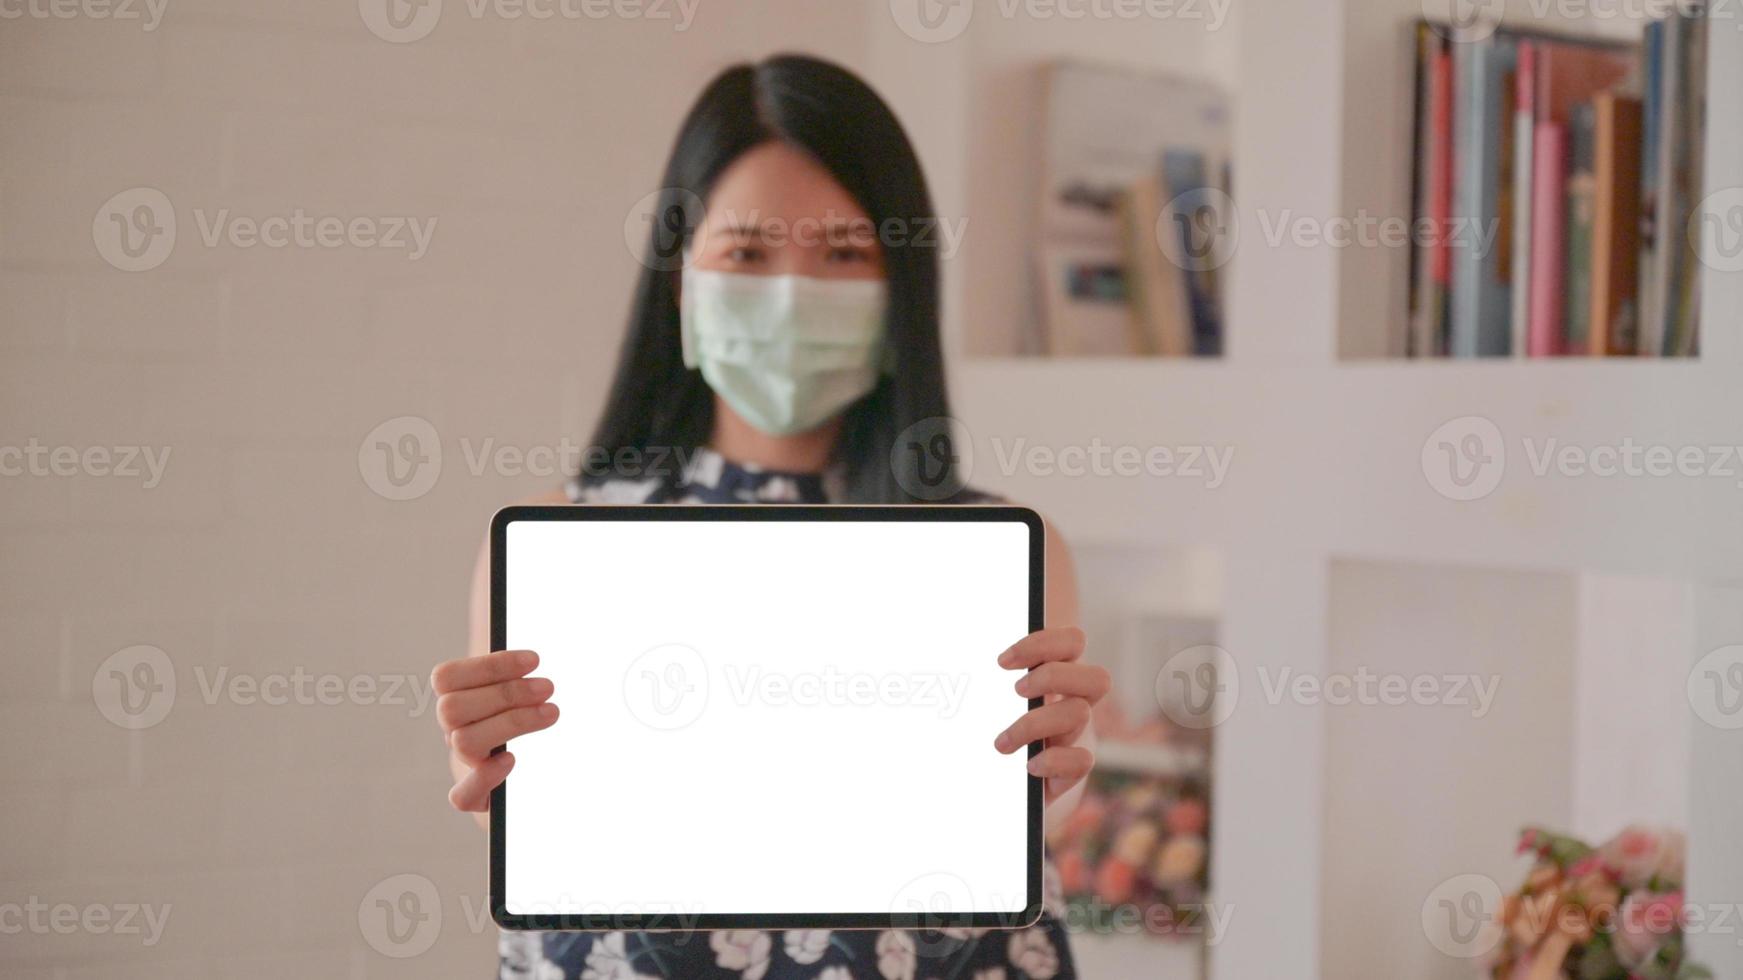 femme asiatique portant un masque tenant une tablette face à l'écran avant pour un message de protection contre le virus corona ou covid-19. photo